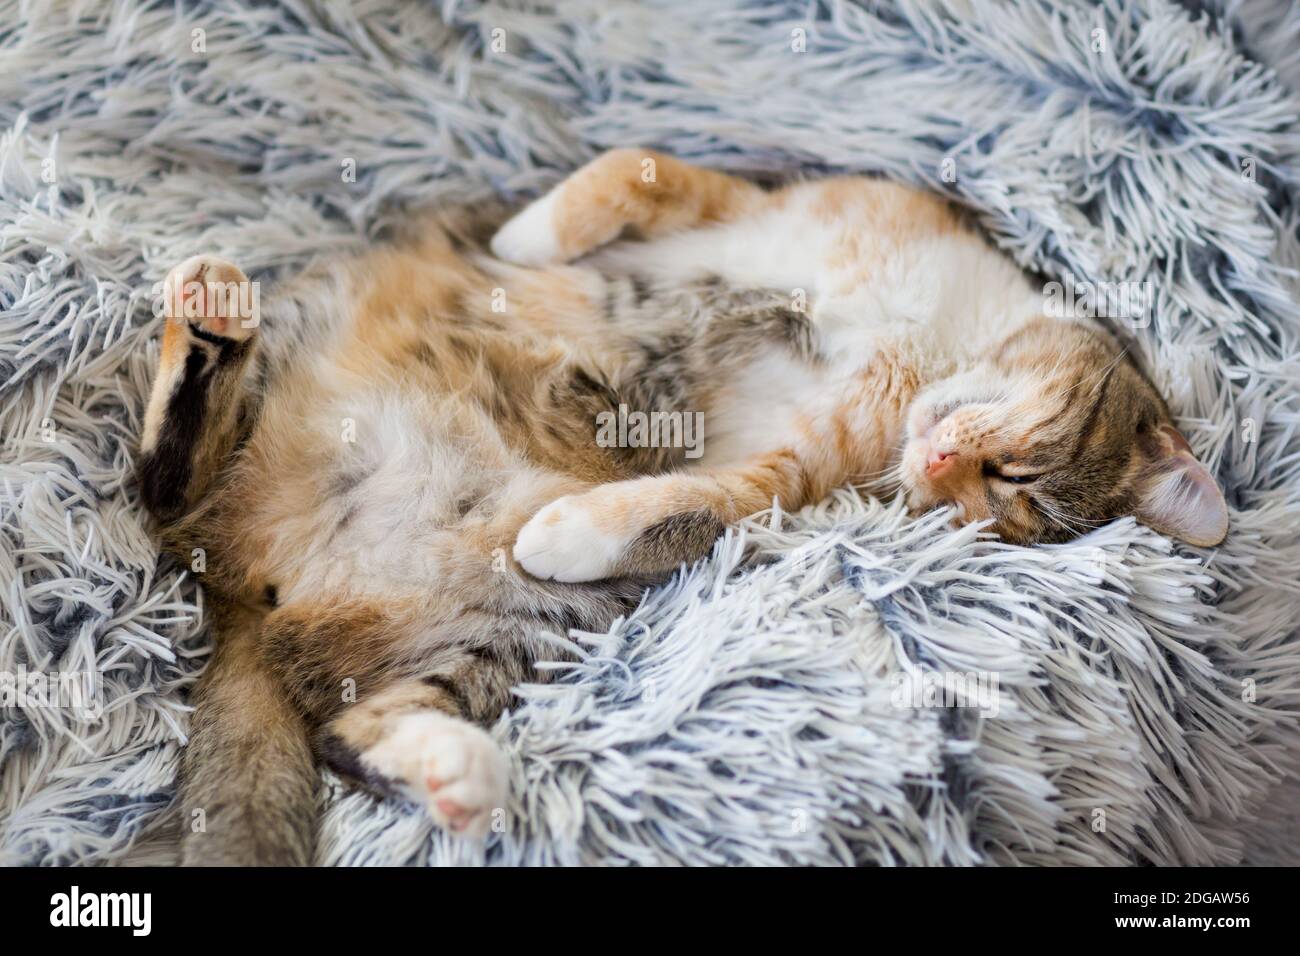 Gattino giovane e pigro che dorme su una coperta Foto Stock